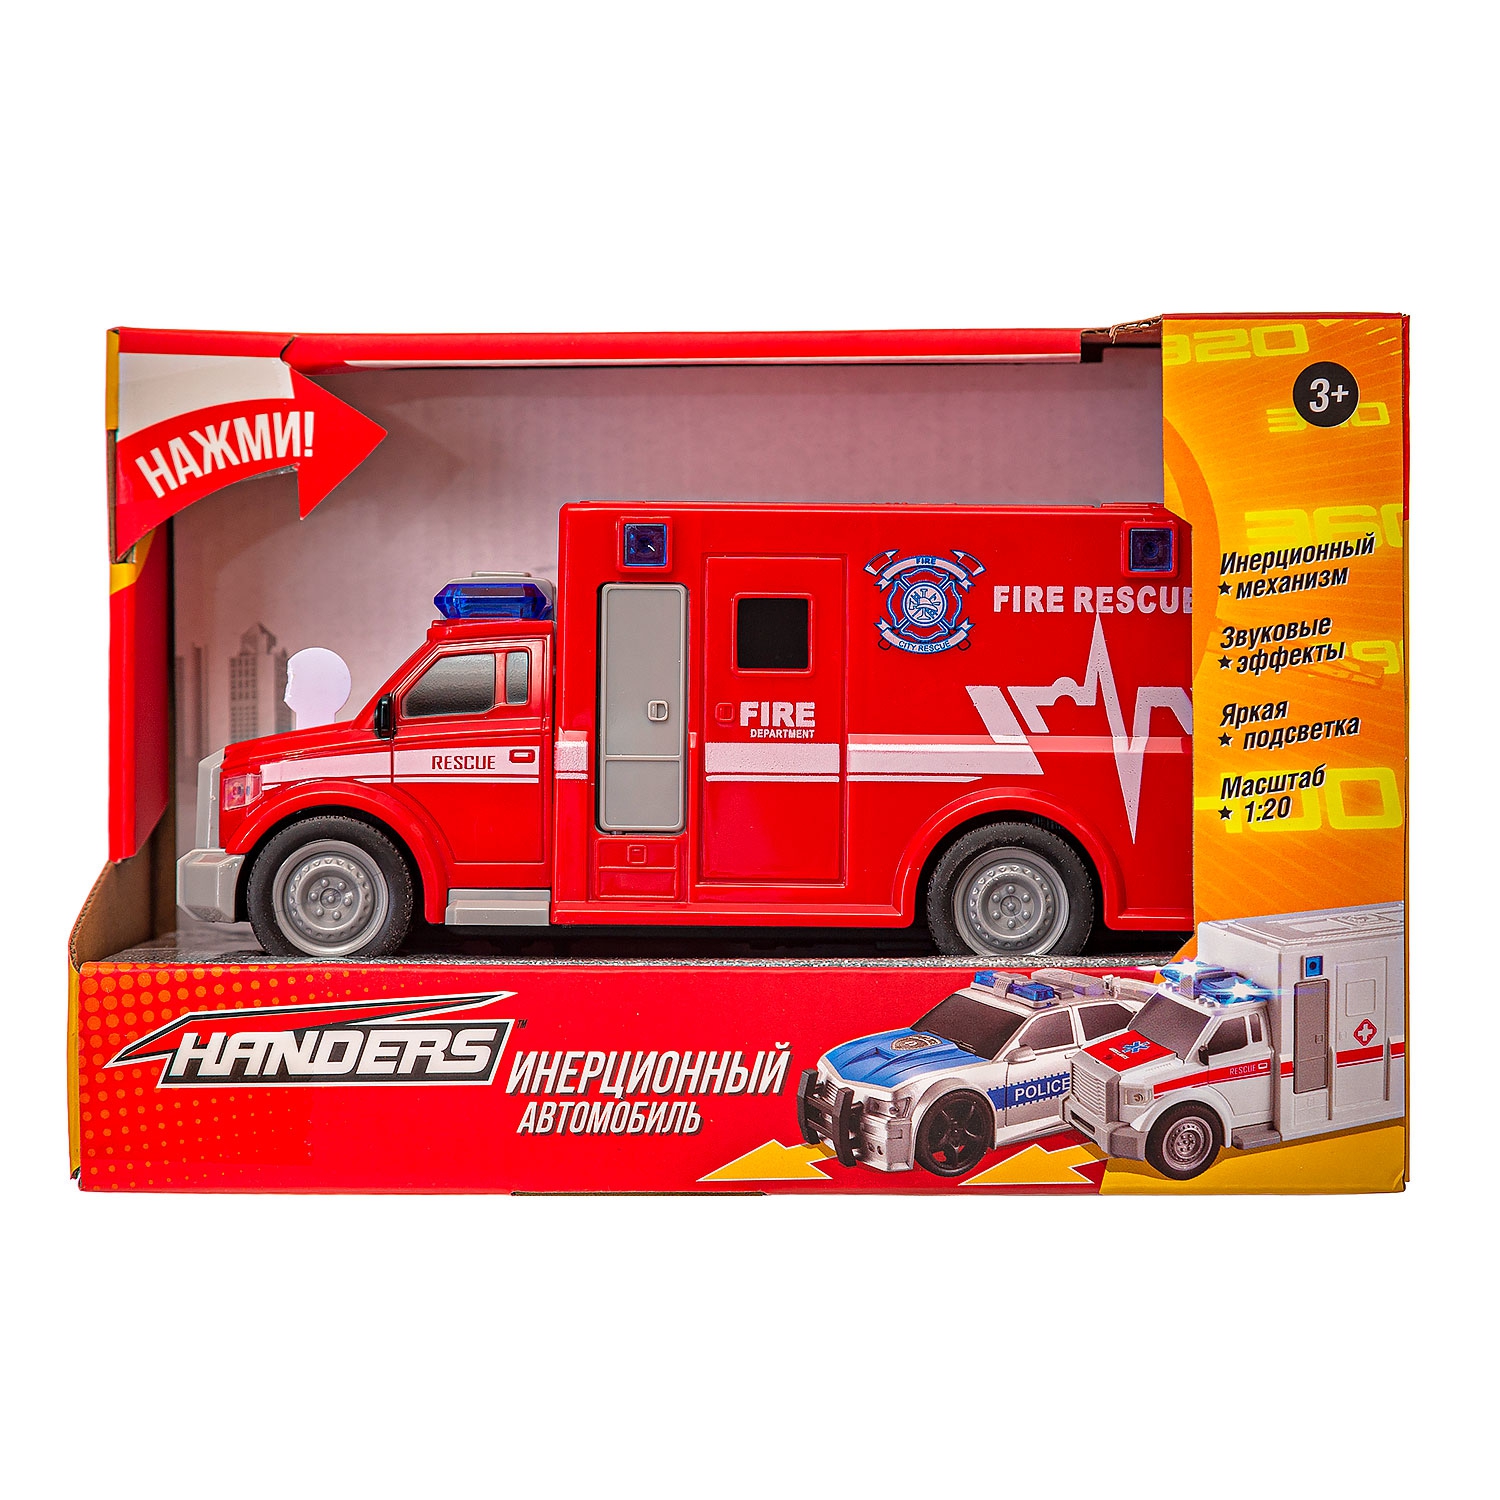 Инерционная игрушка Handers Пожарный фургон (19 см, 1:20, свет, звук) (10702070/290520/0110739/1, 